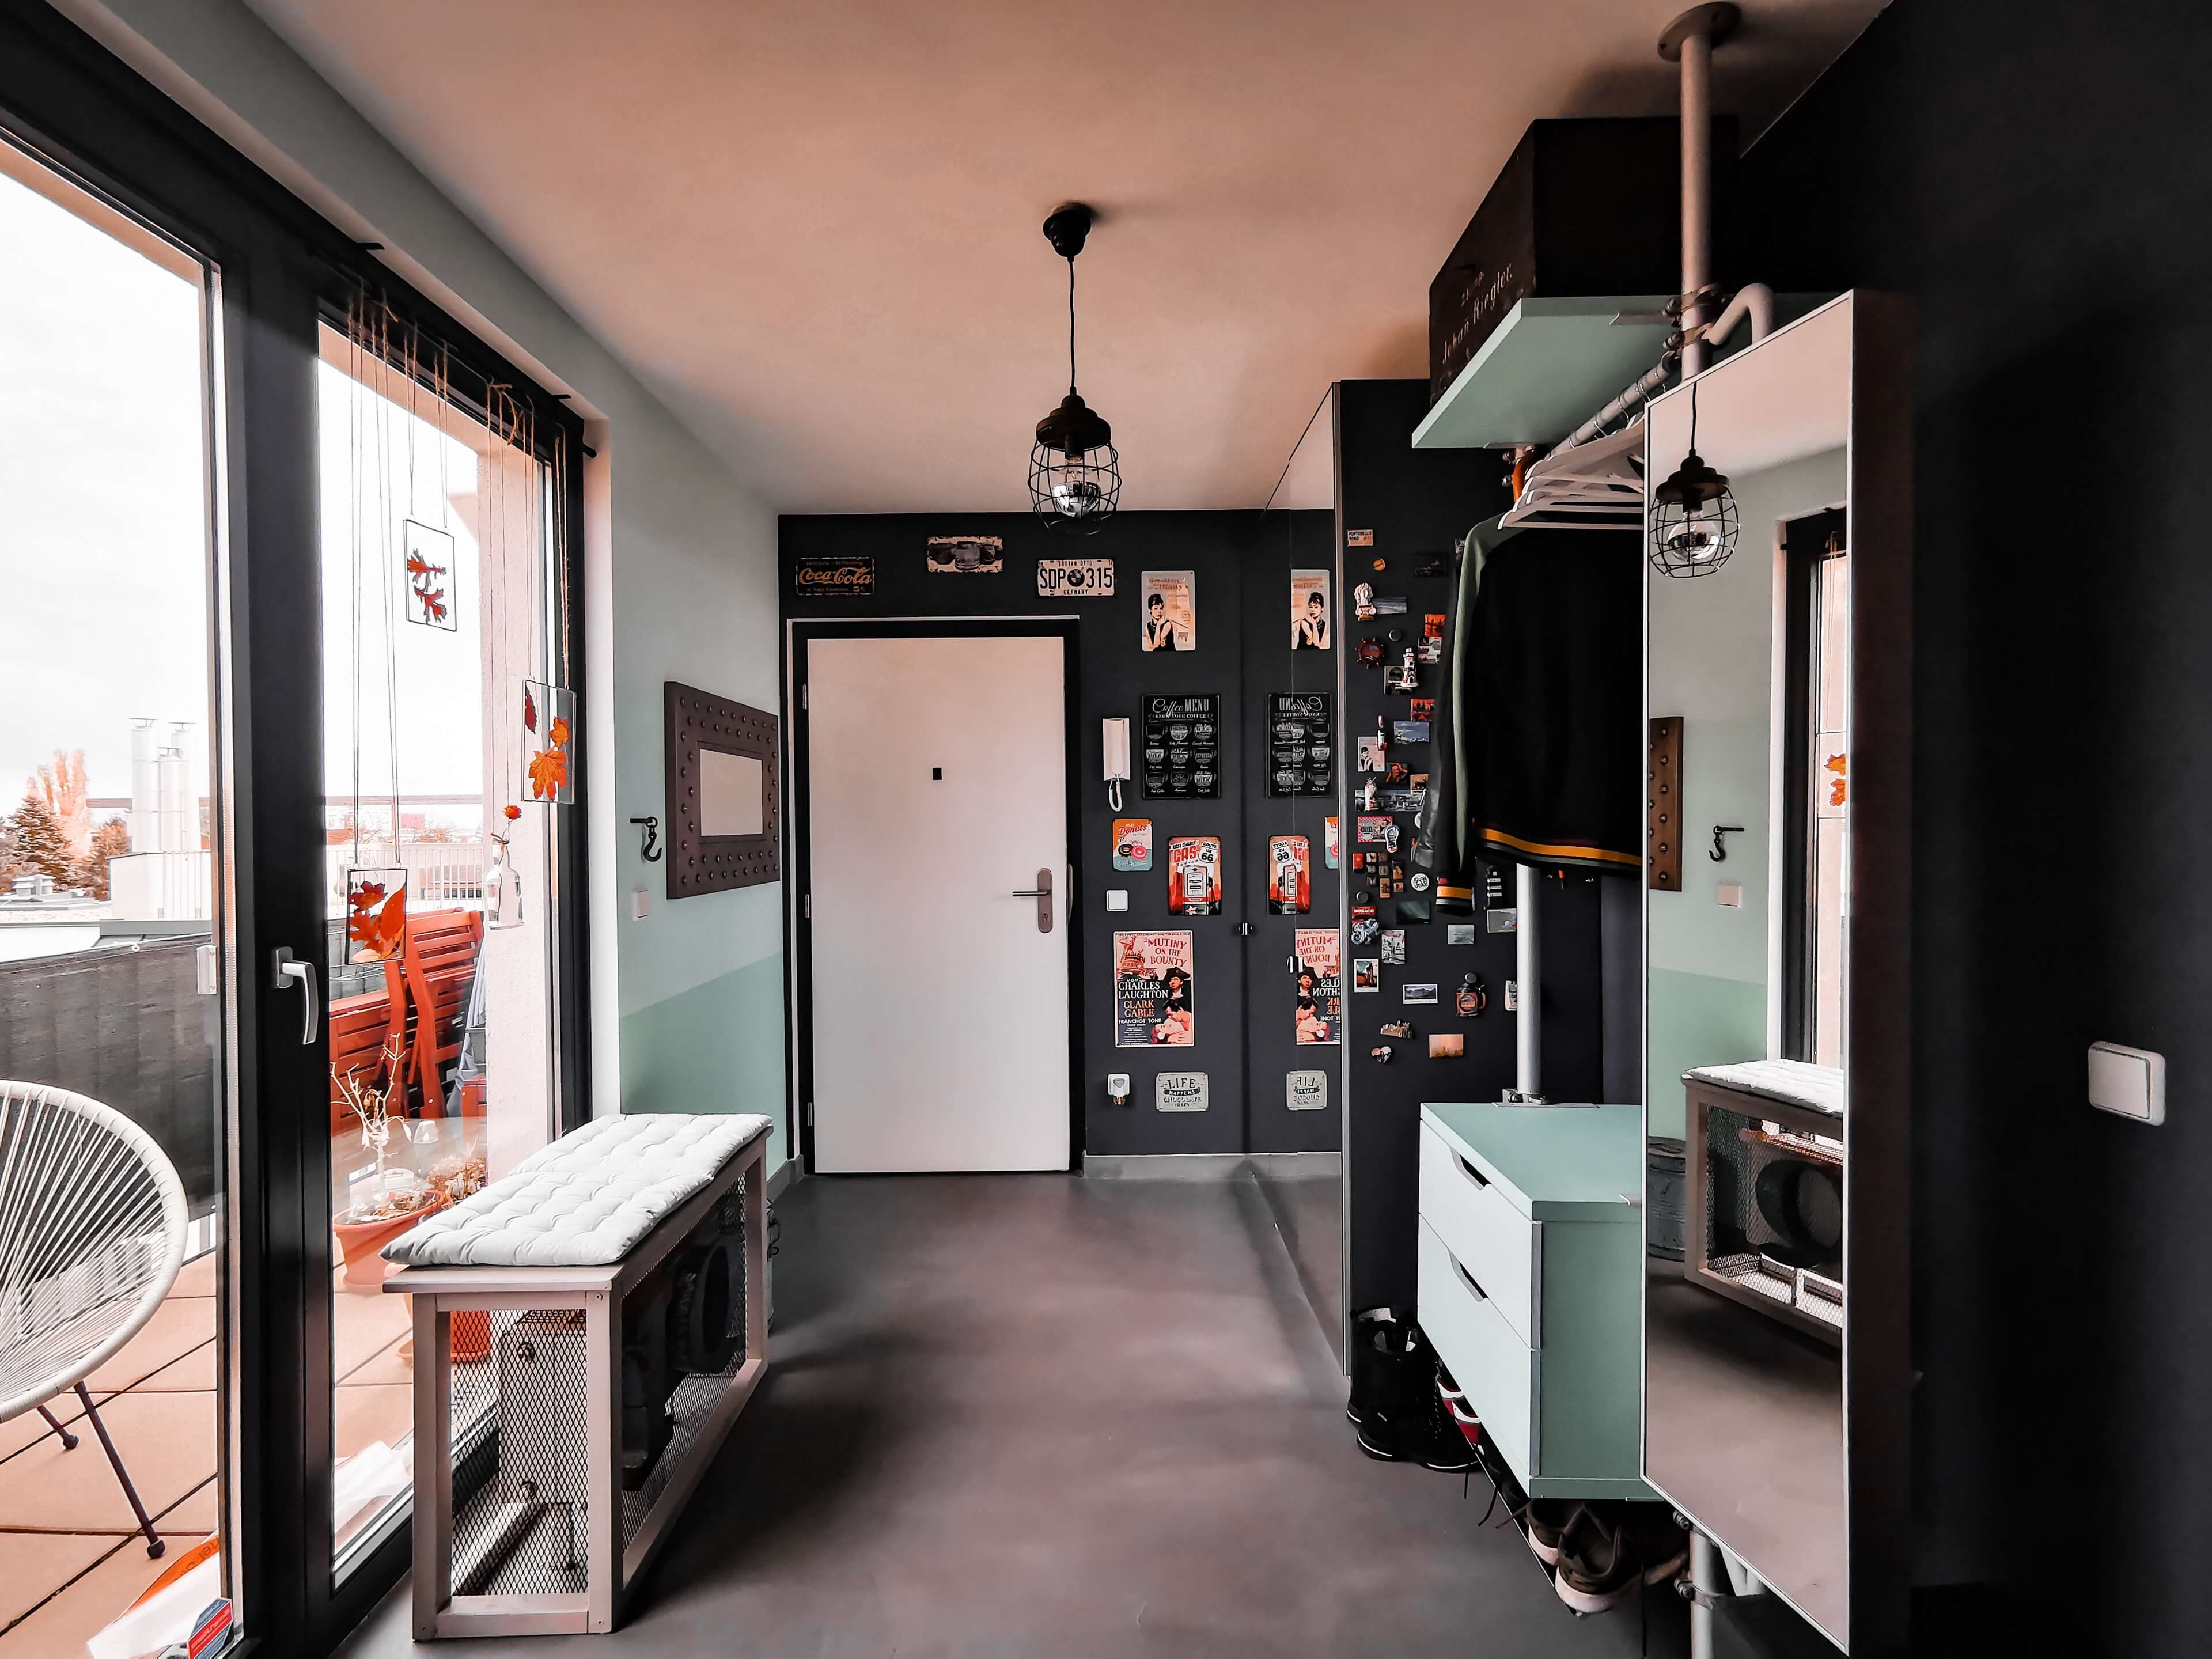 IMG 20191116 100001 resized 20191117 061559812 - Projekt Vorzimmer: 11 DIY-Ideen an einem Ort